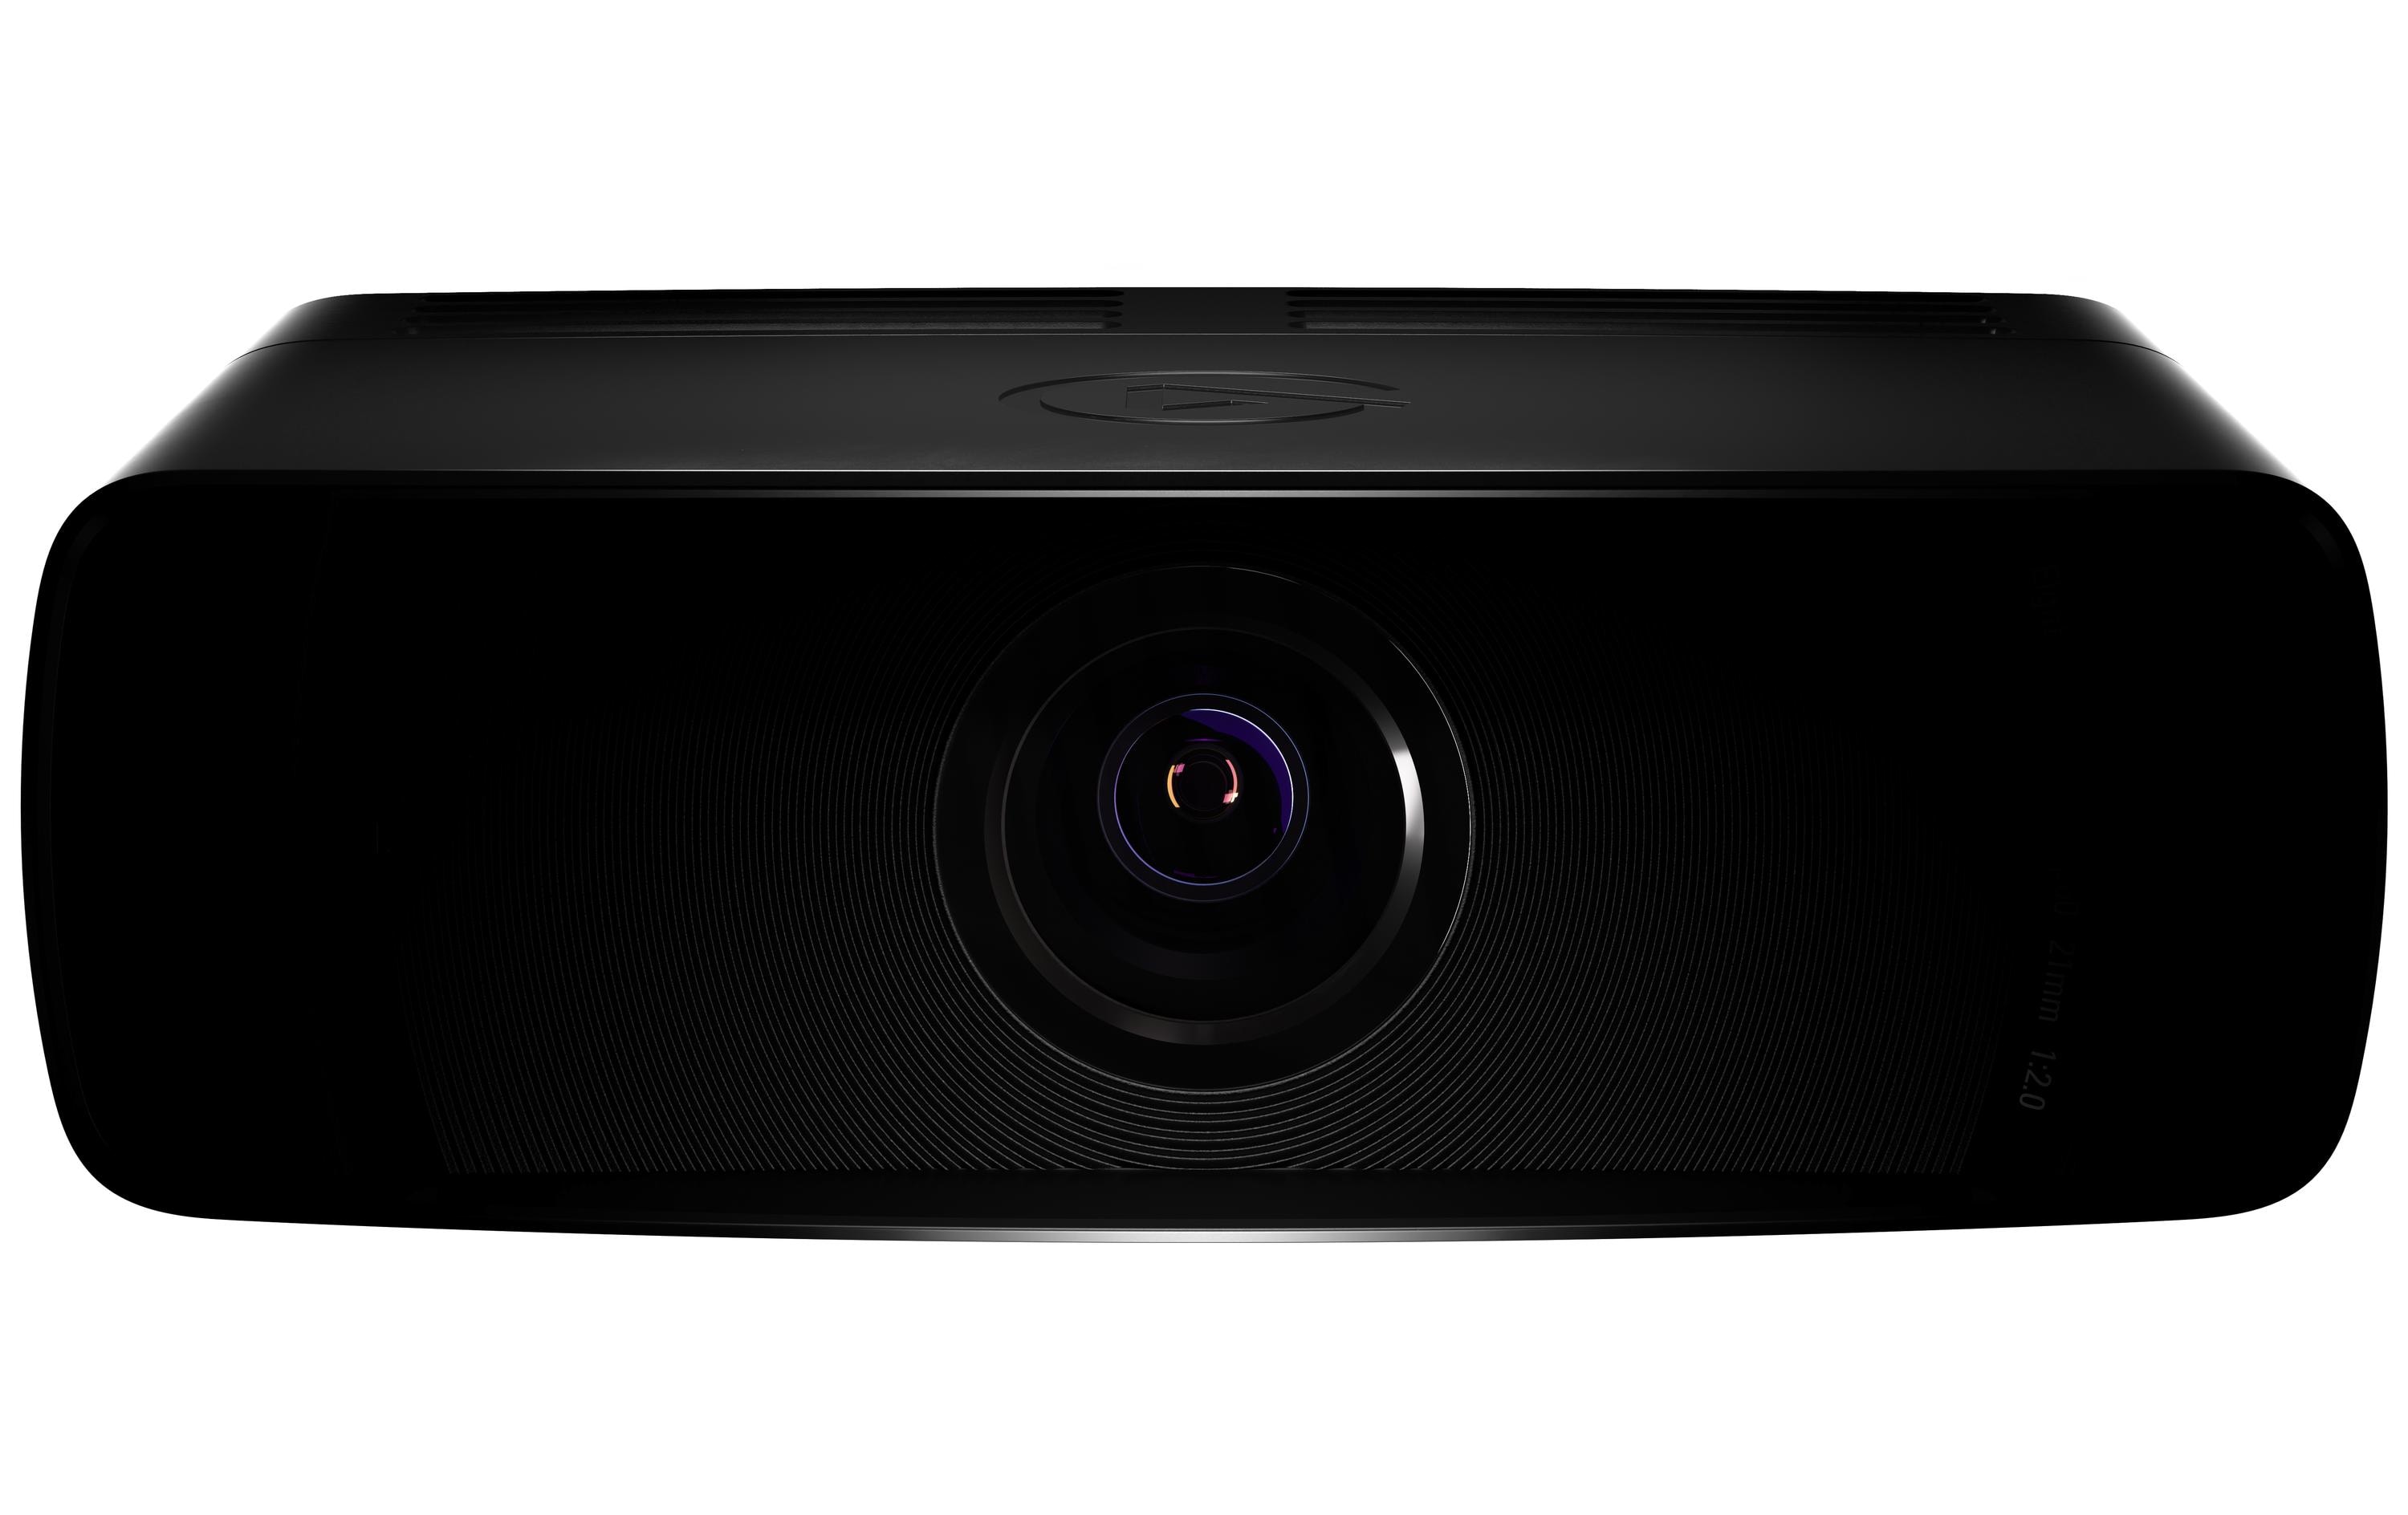 Elgato Webcam Facecam Pro